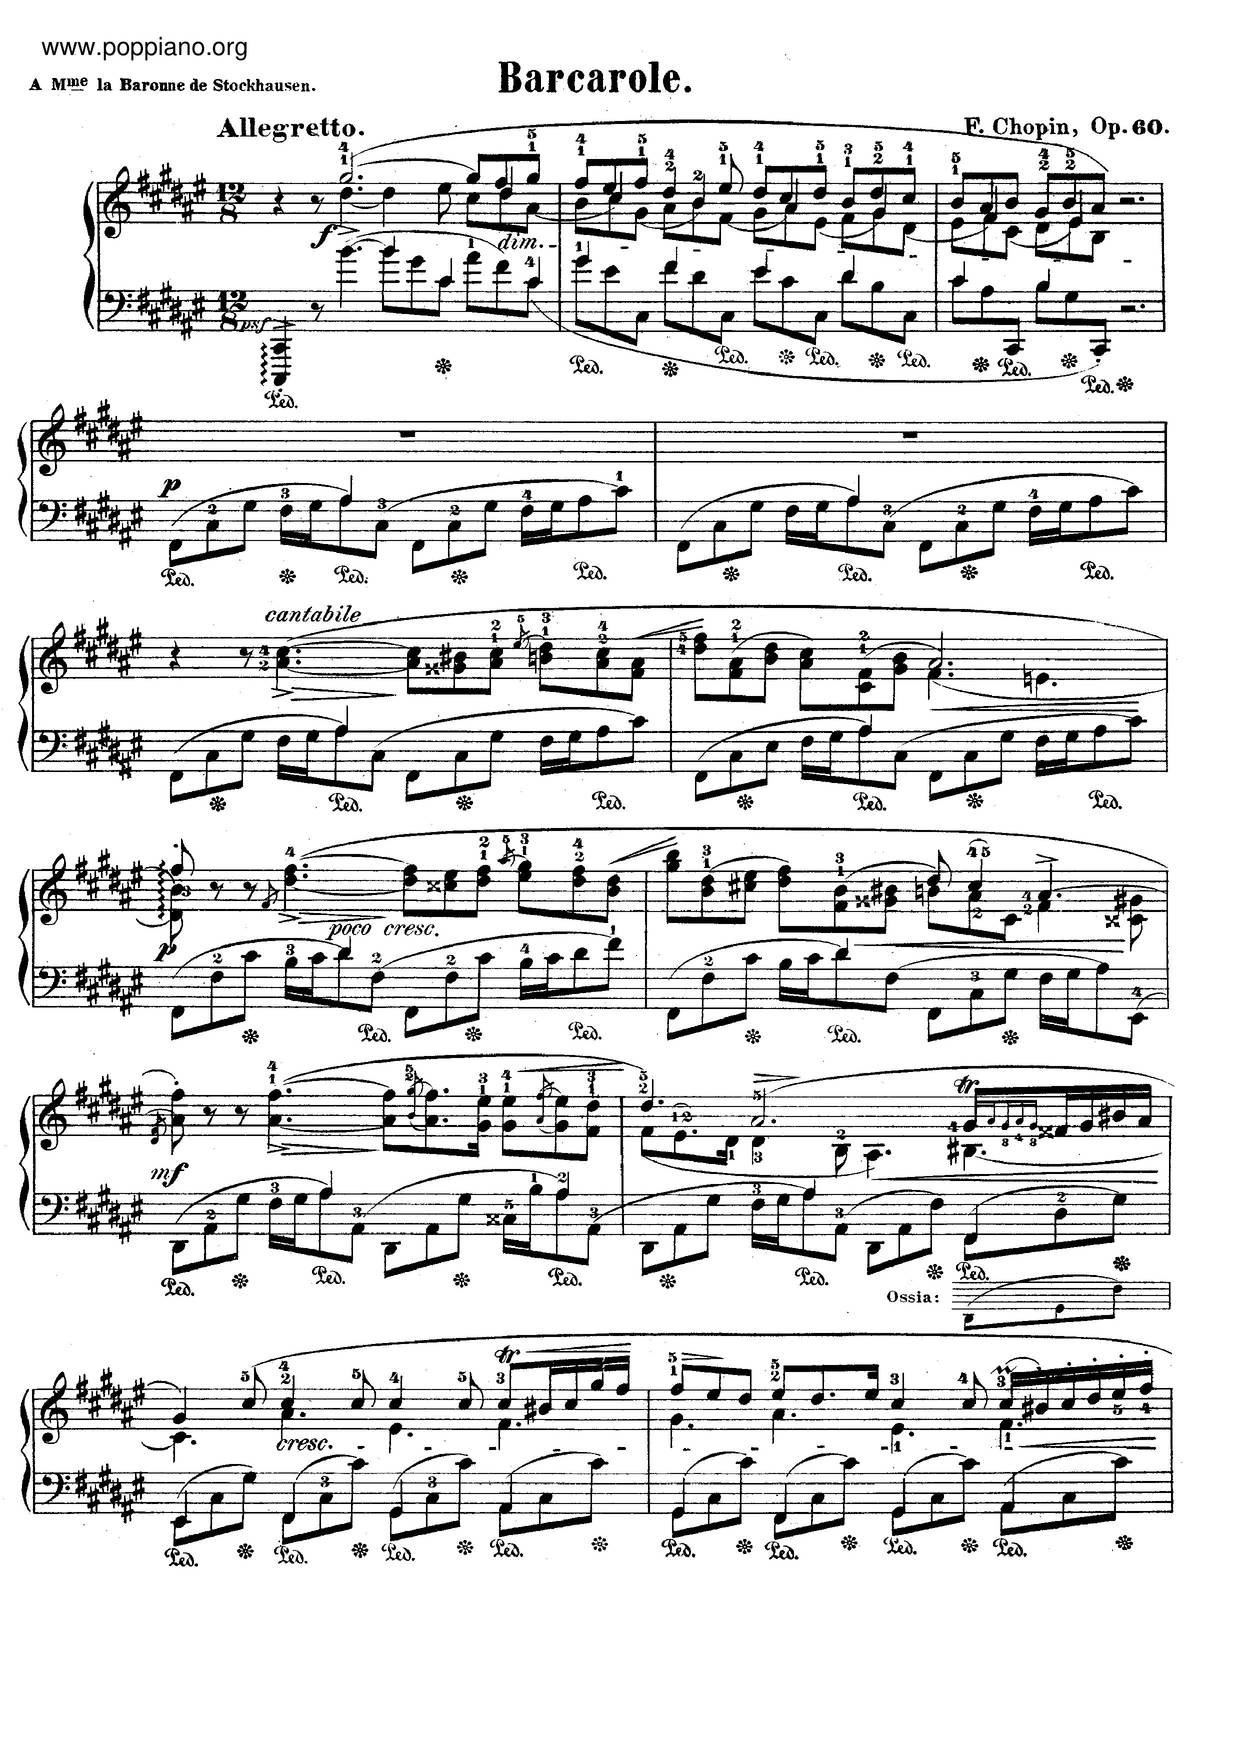 Barcarolle, Op. 60 Score